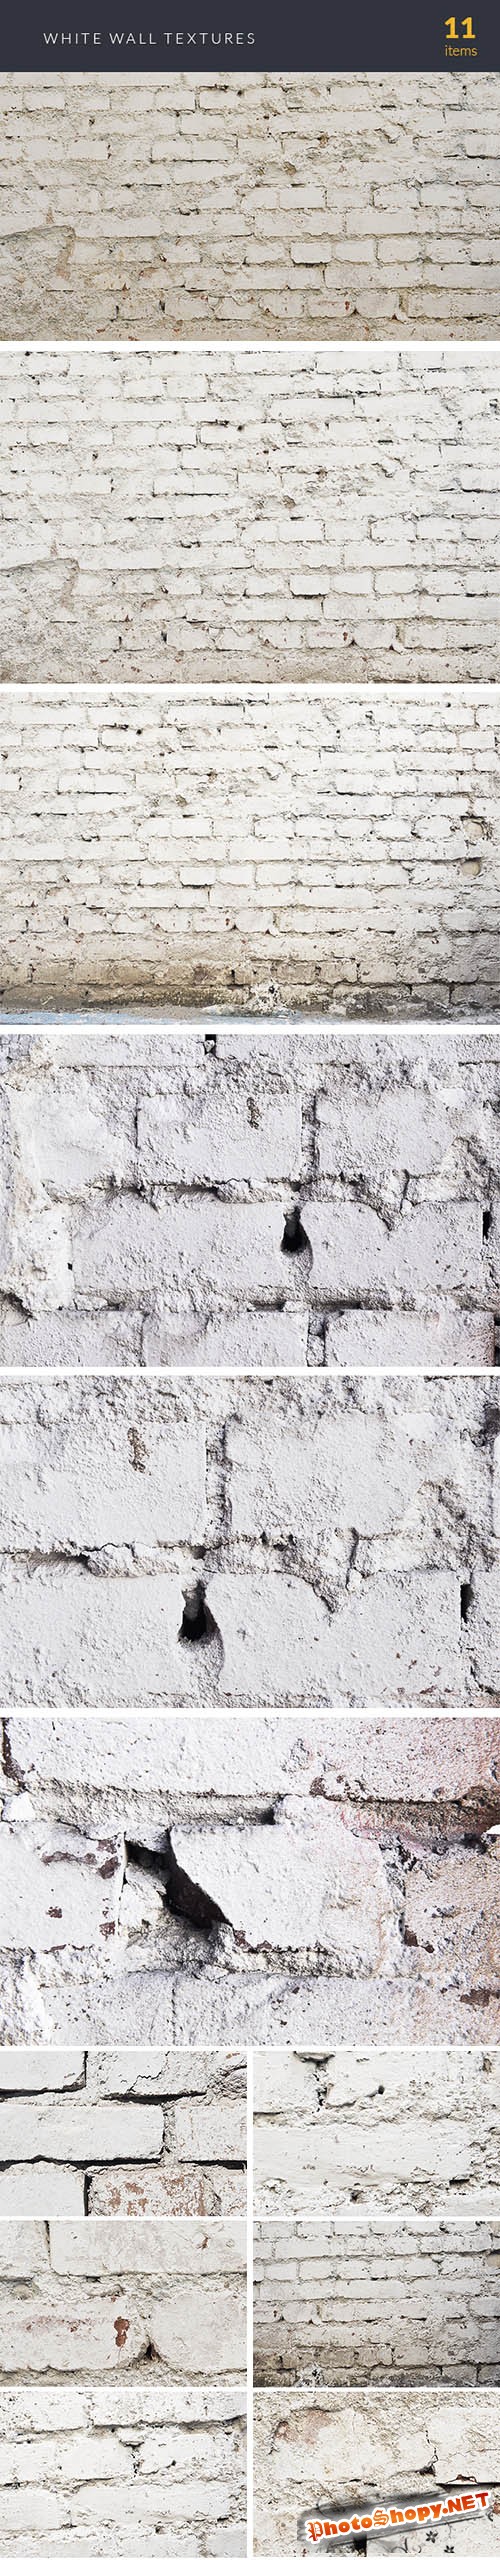 White Wall Textures Set 1